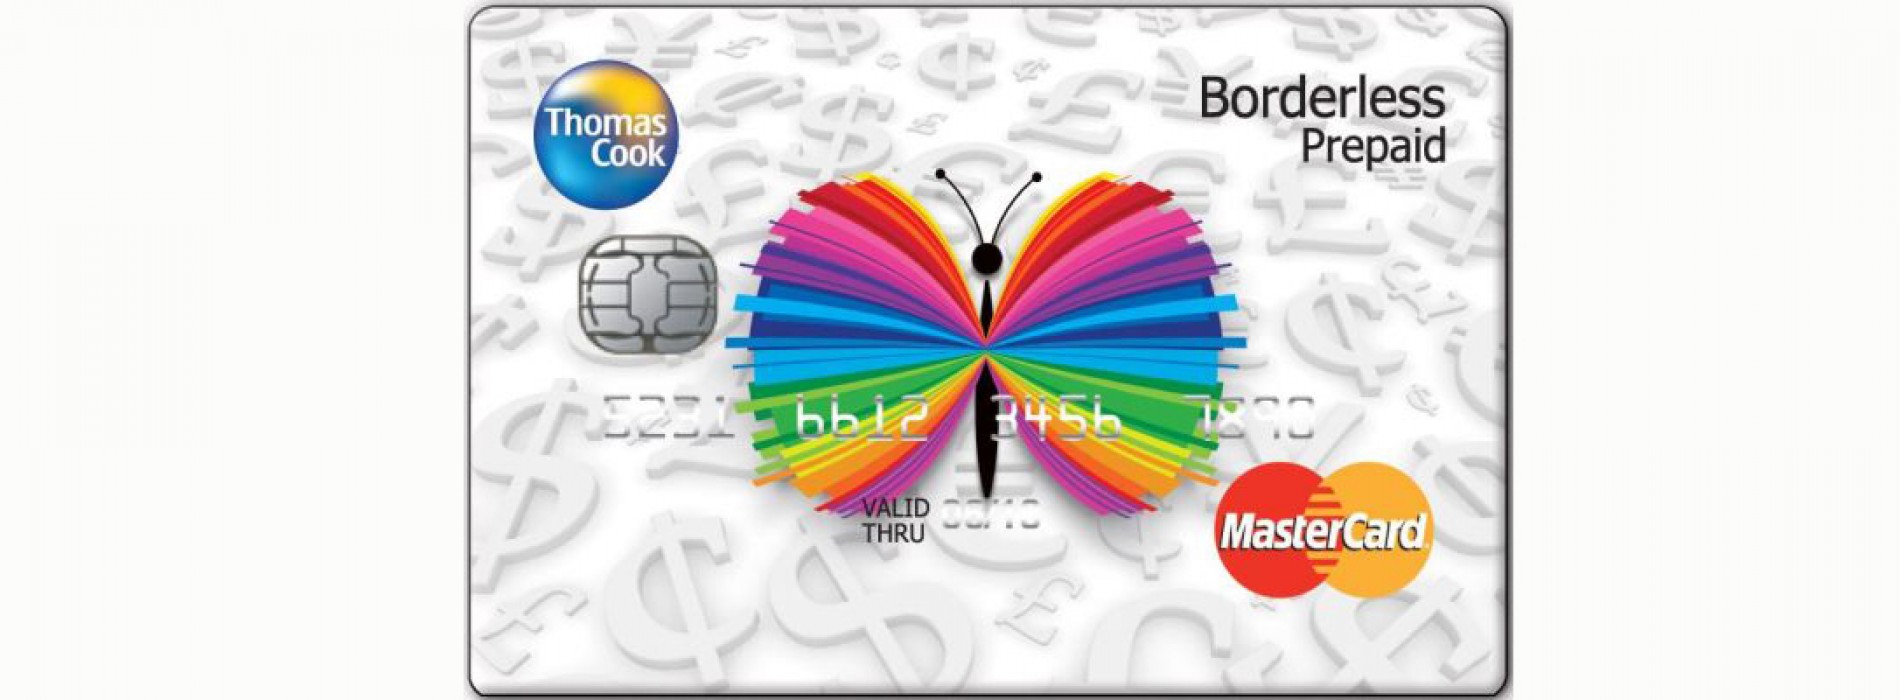 Thomas Cook India introduces UAE Dirham to its Borderless Prepaid Card